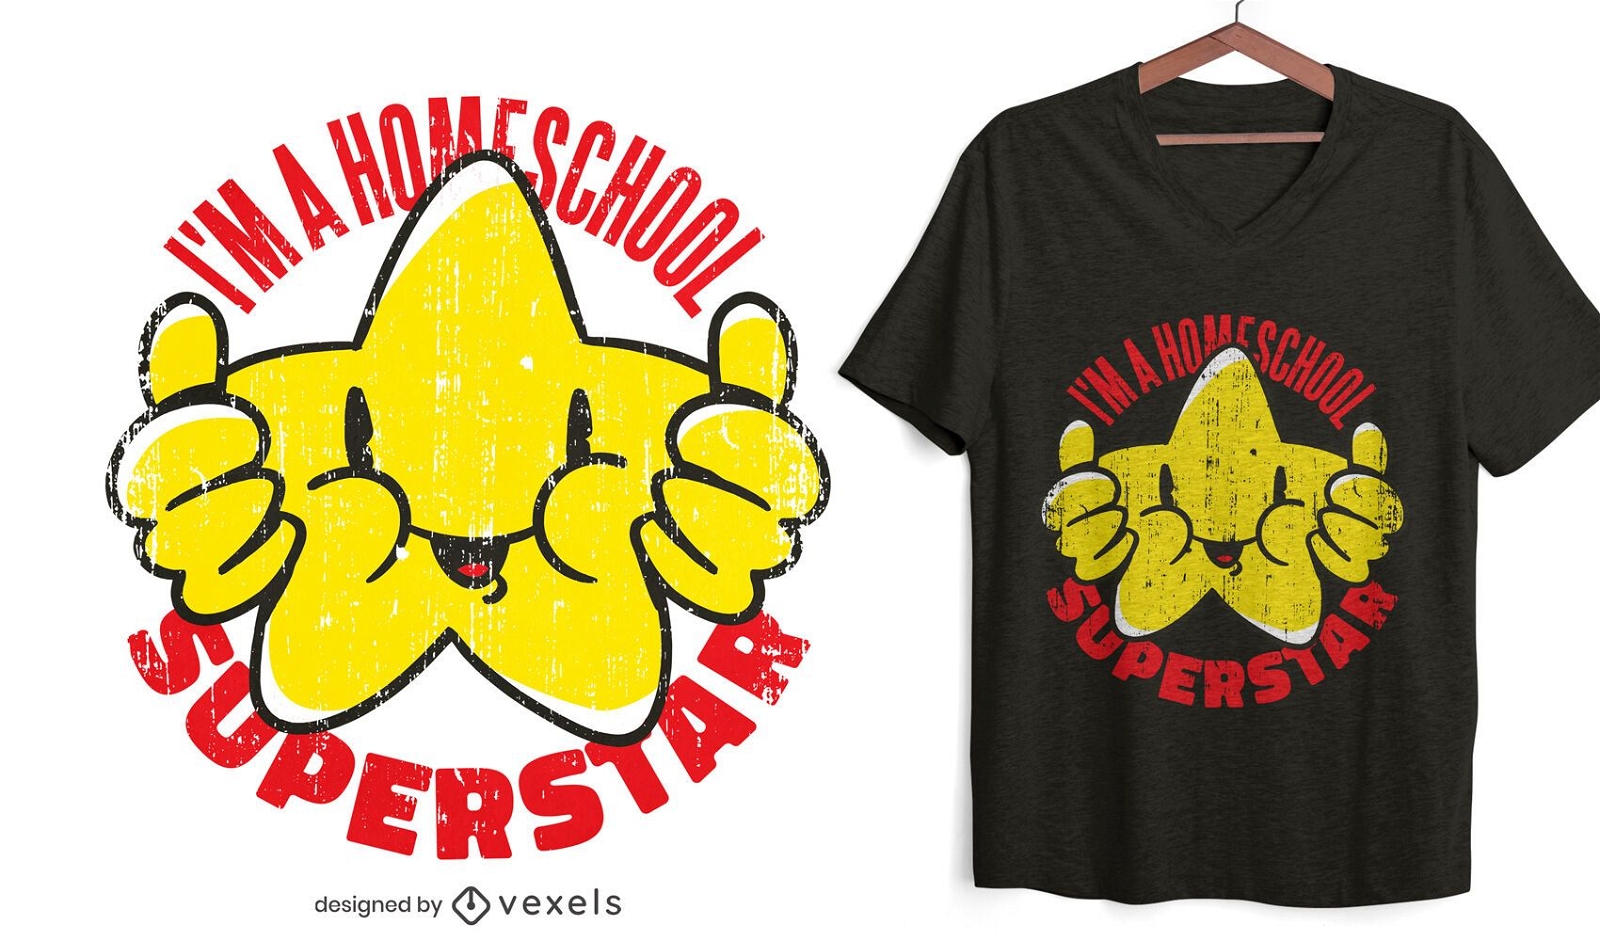 Homeschool superstar t-shirt design